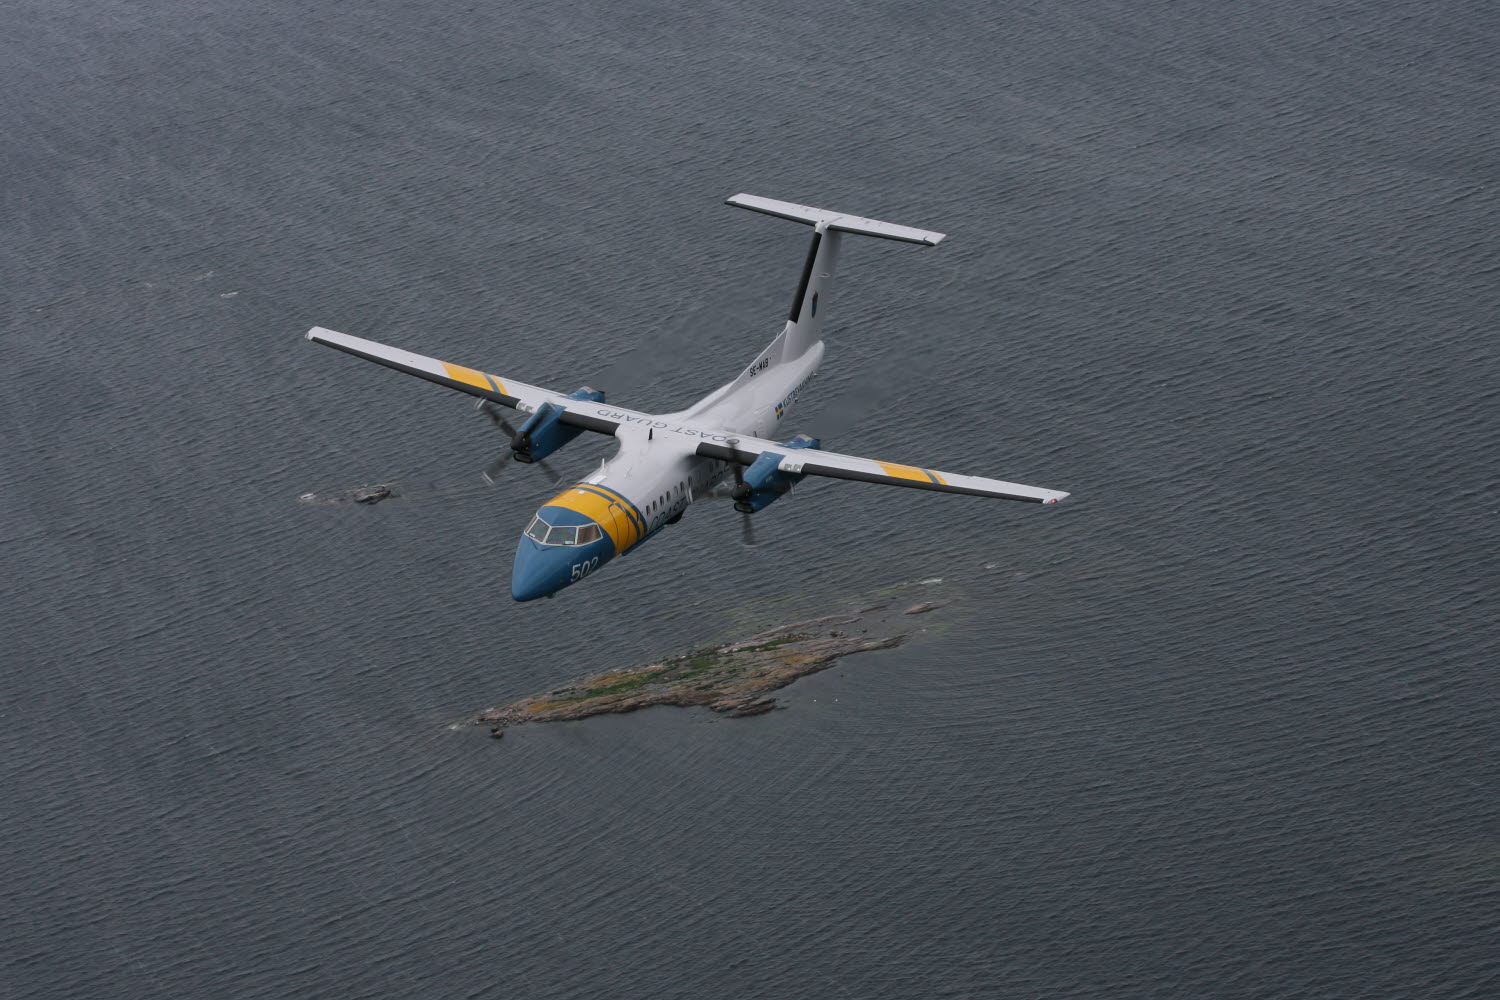 Havsövervakningsflygplan KBV 502 sedd uppifrån